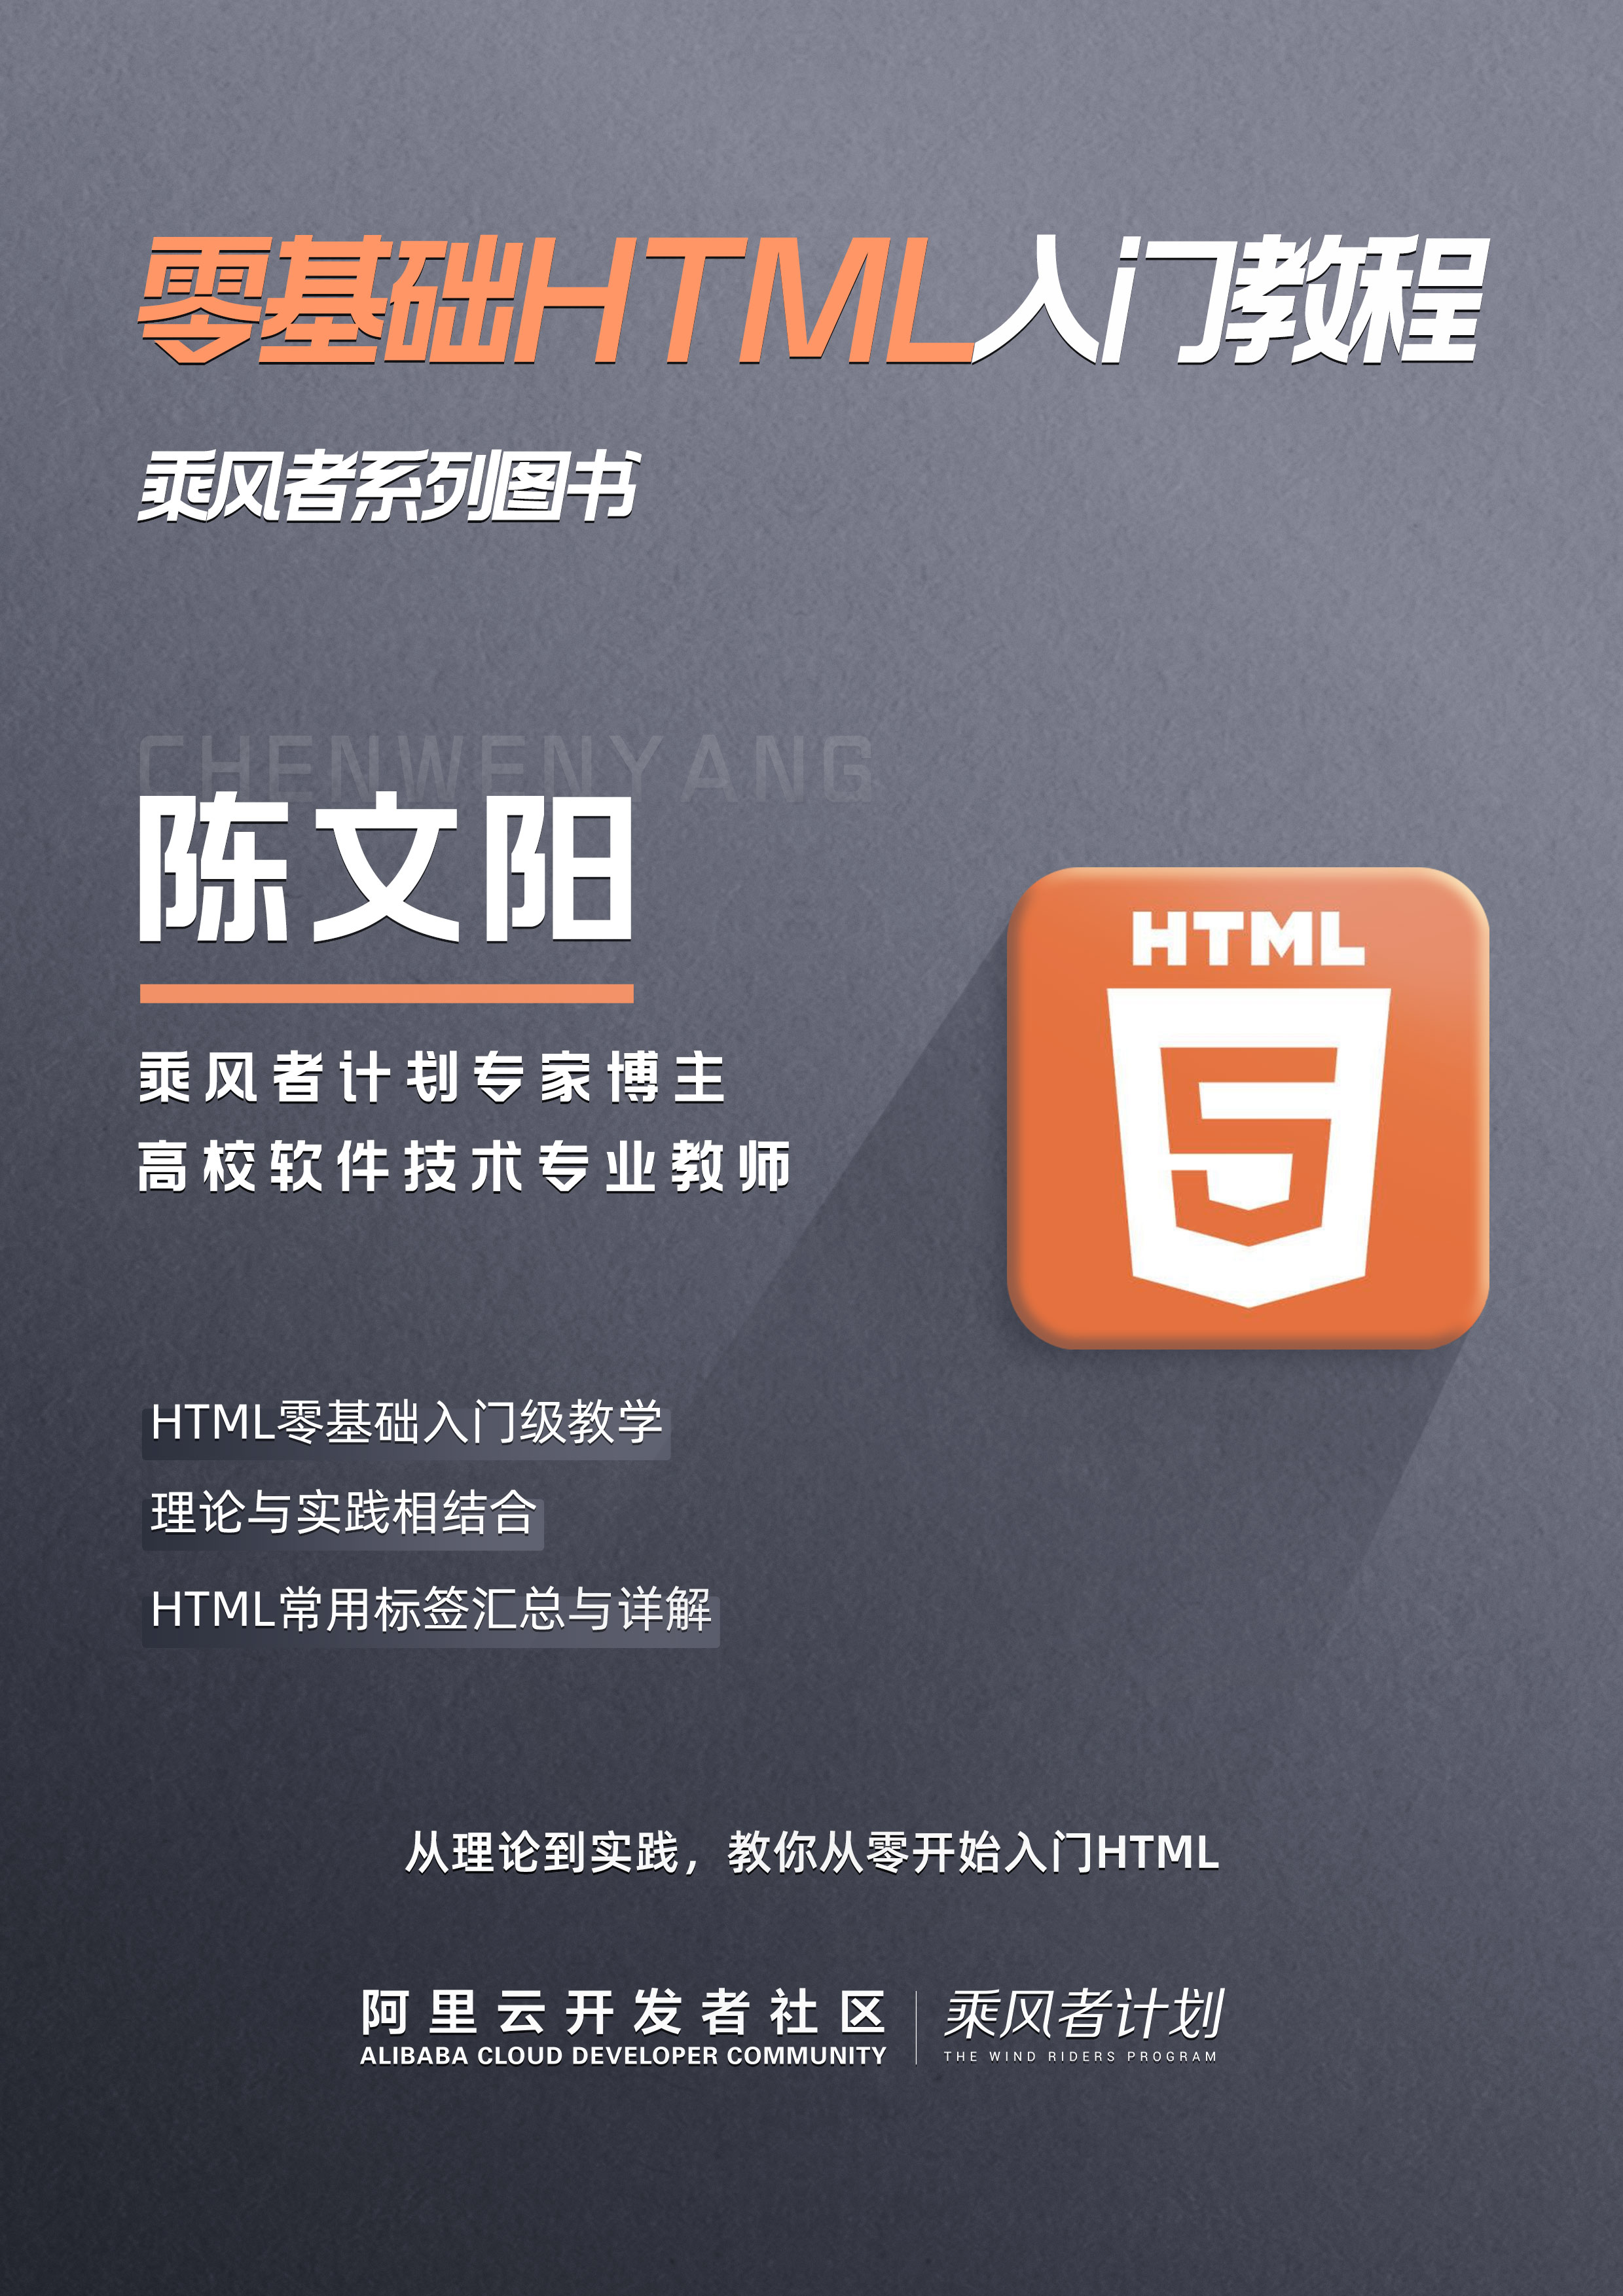 免费下载！程序员入门系列教程之《零基础HTML入门教程》重磅推出